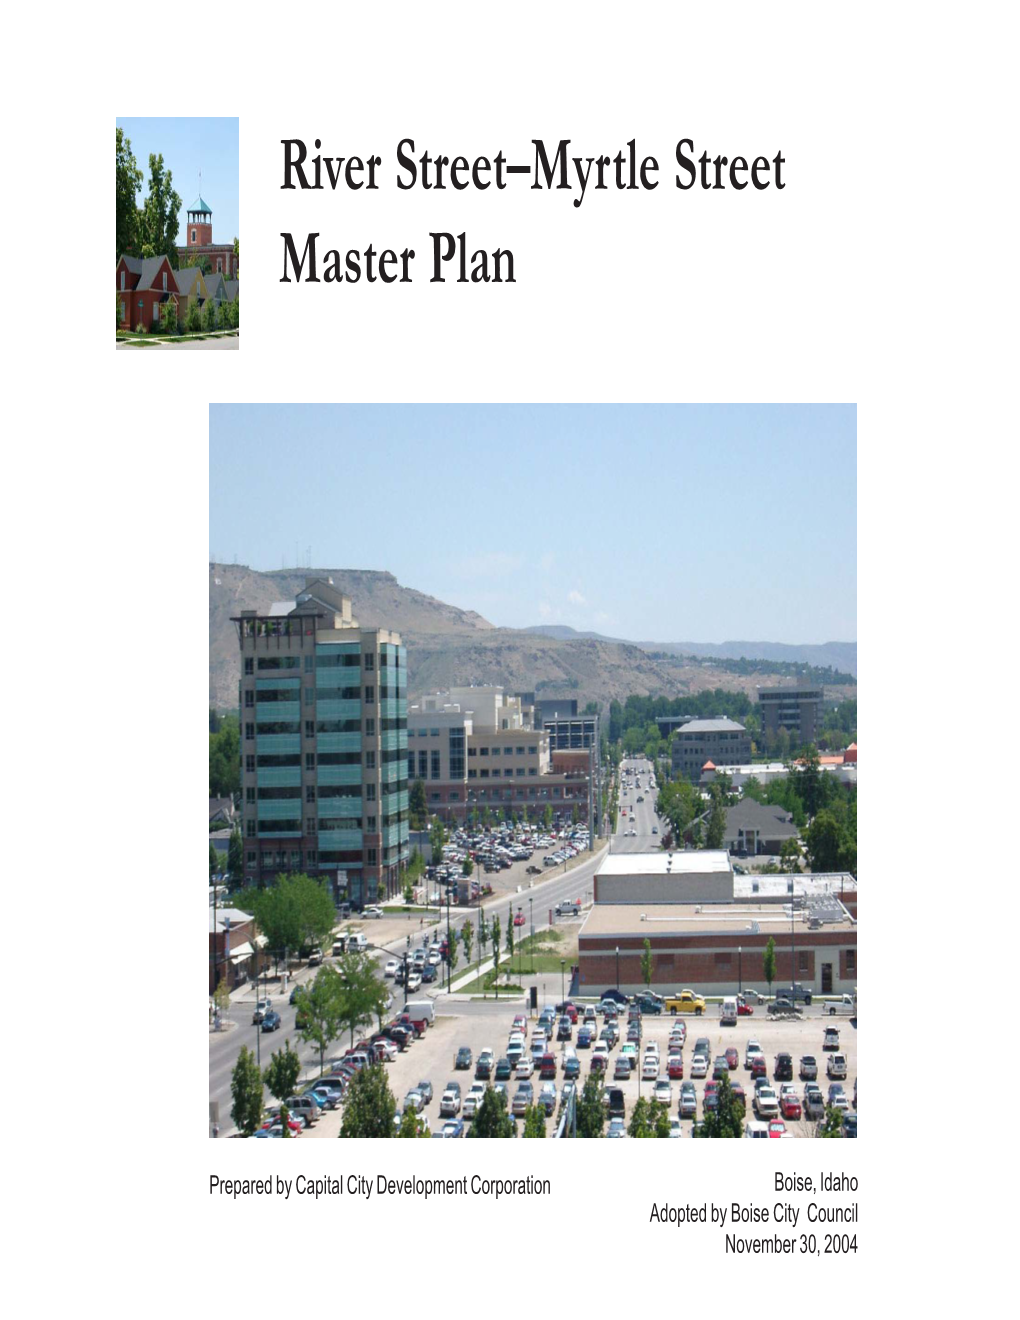 Myrtle Street Master Plan